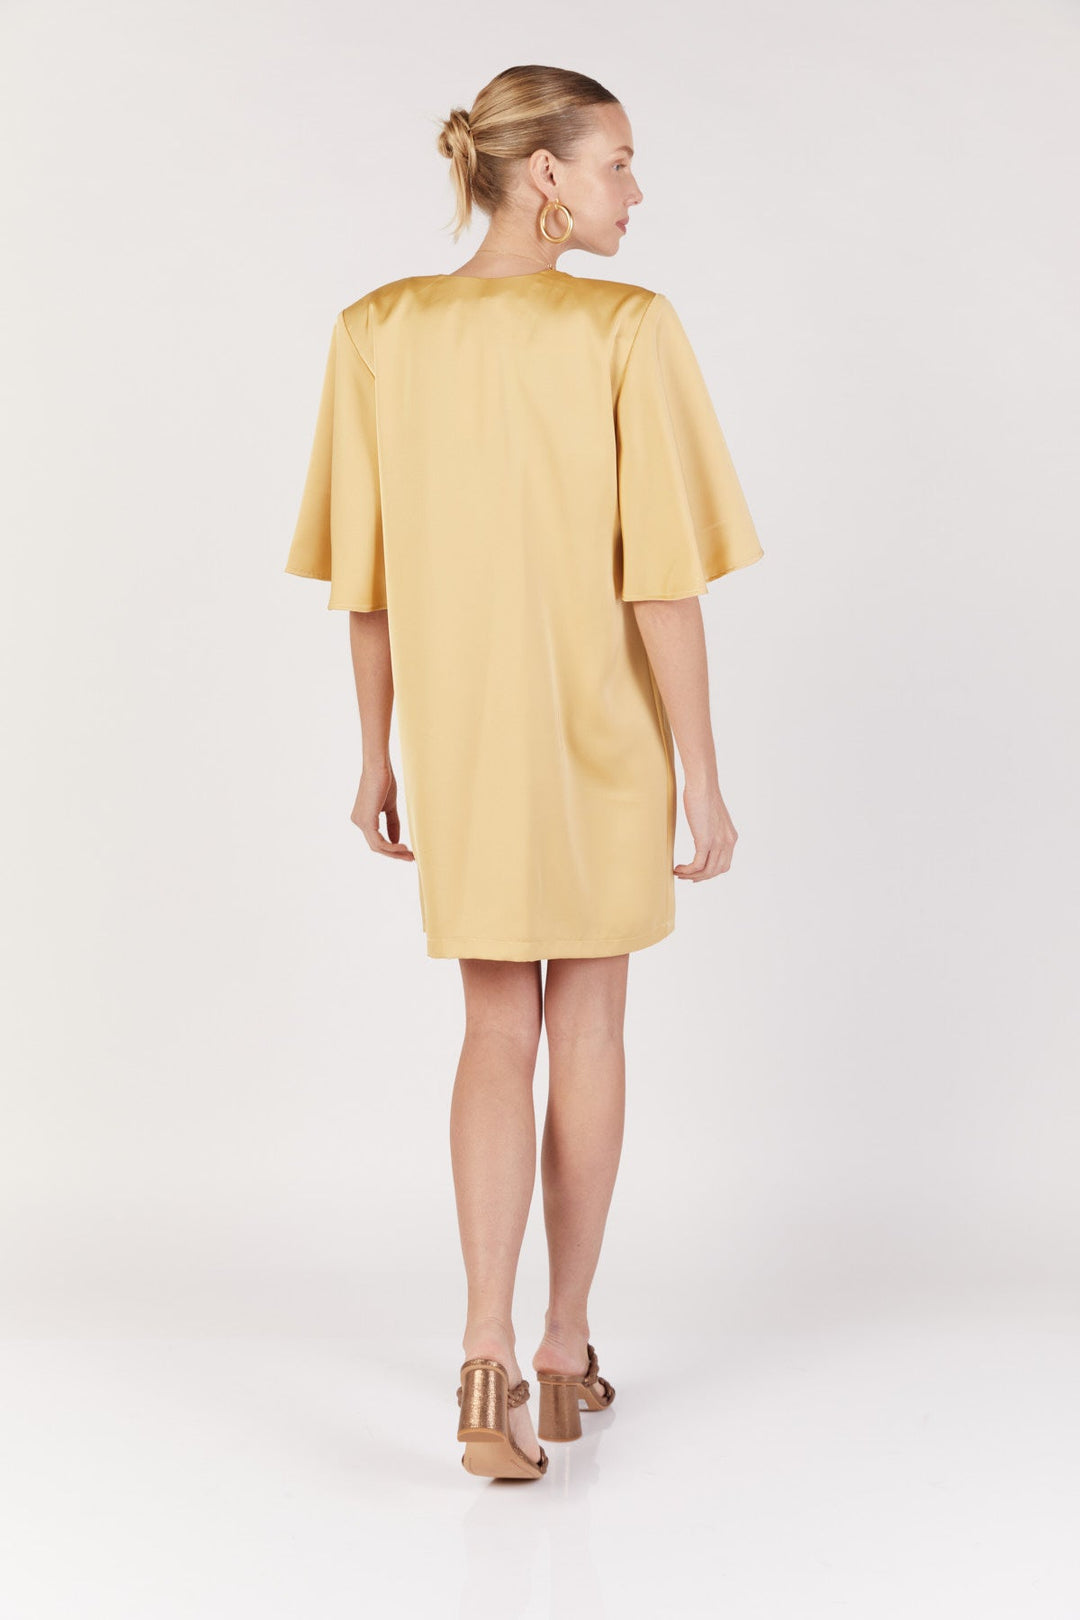 שמלת מיני שרי בצבע צהוב - Dana Sidi